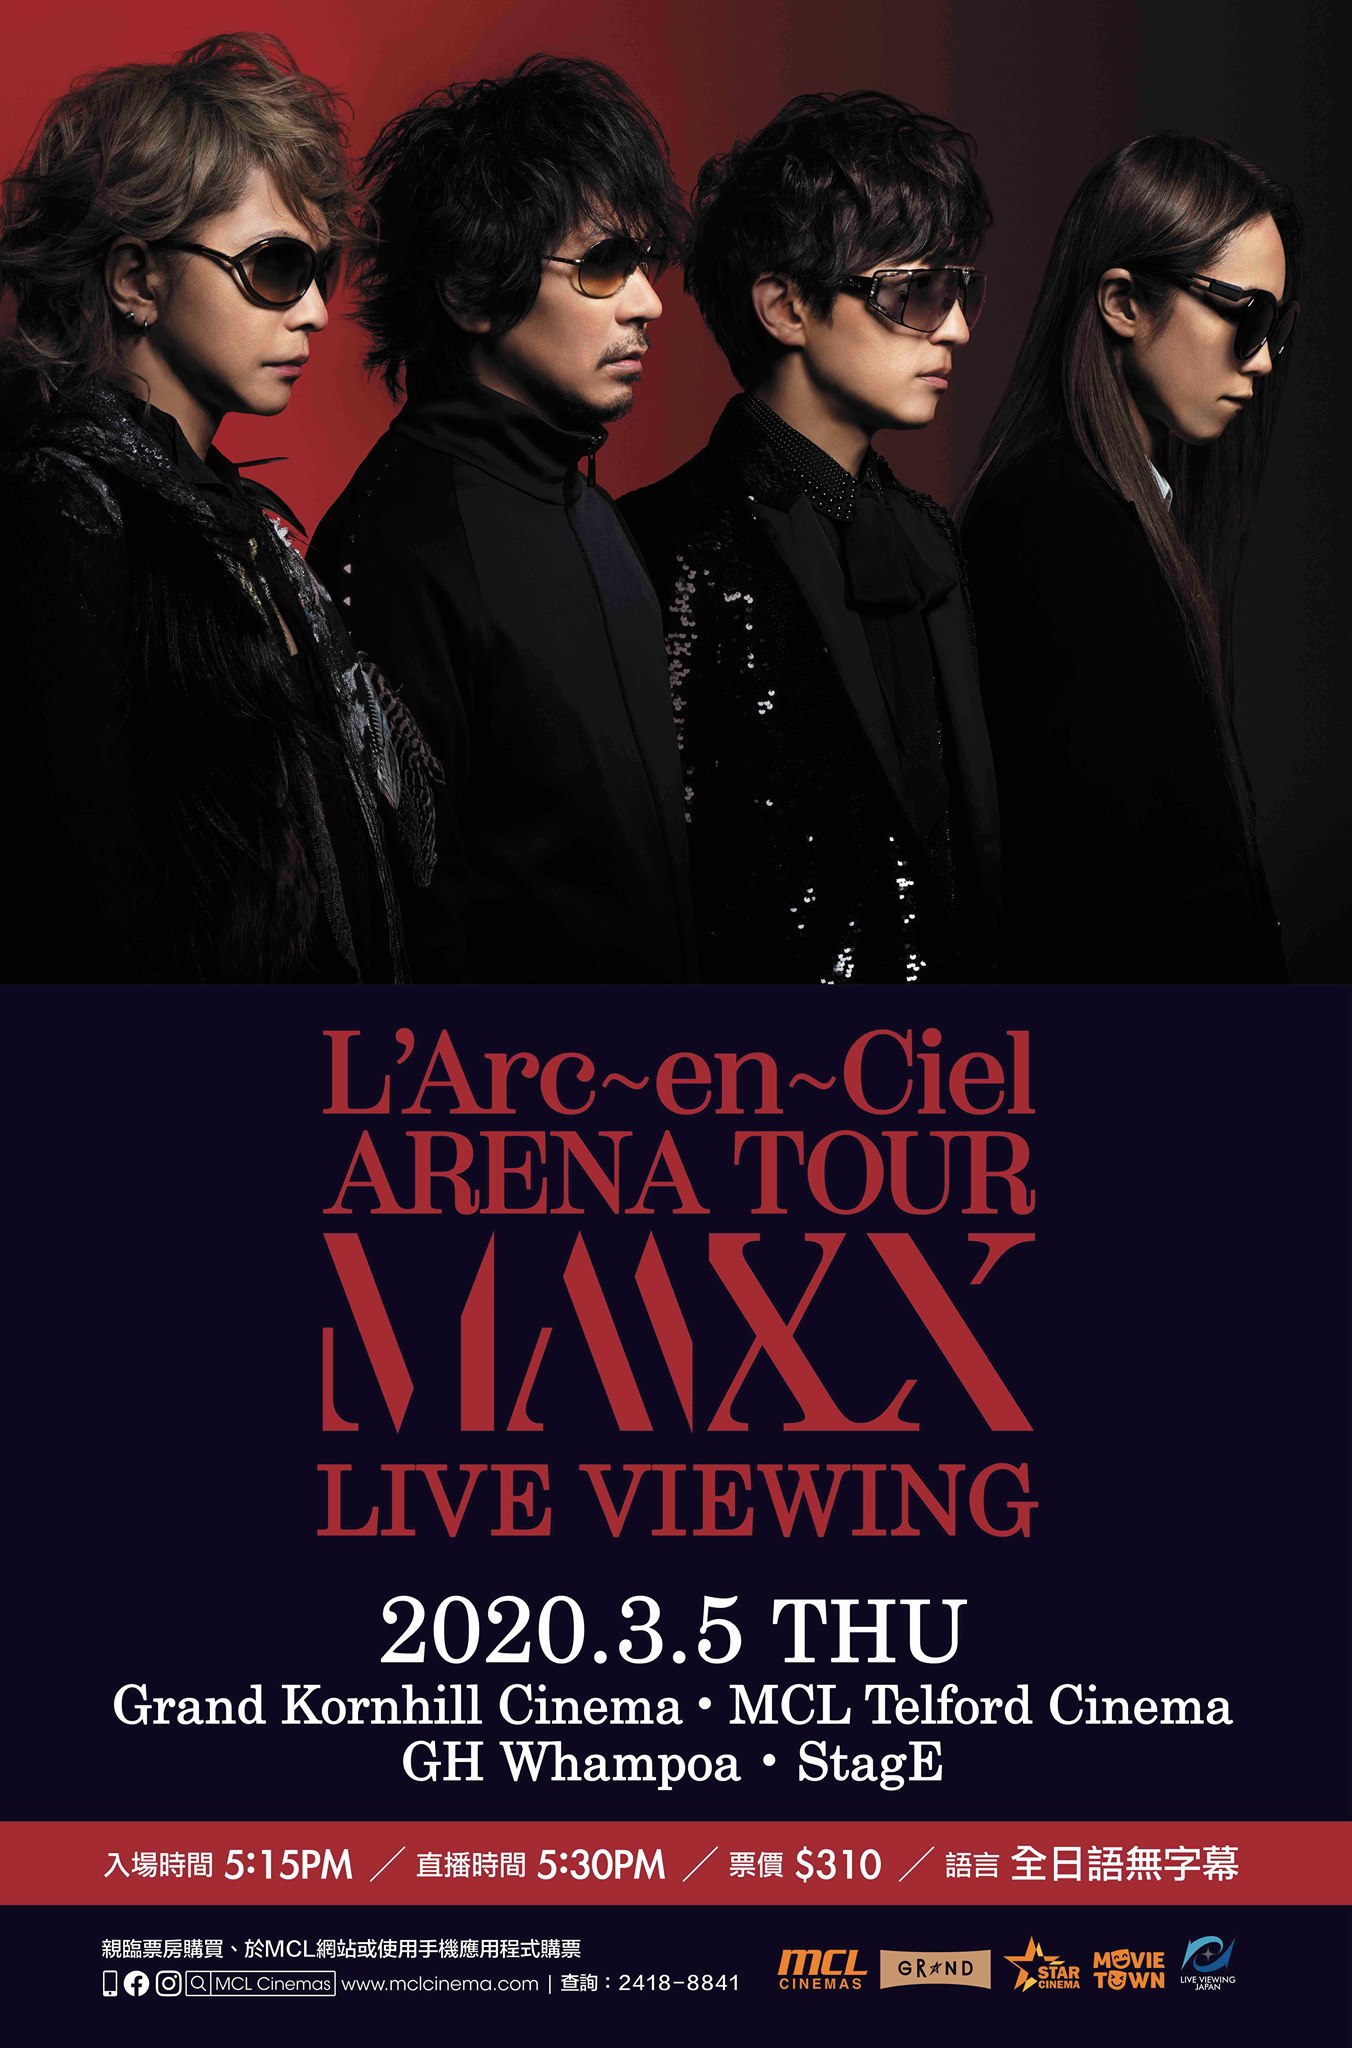 L'Arc～en～Ciel 「ARENA TOUR MMXX」 LIVE VIEWING